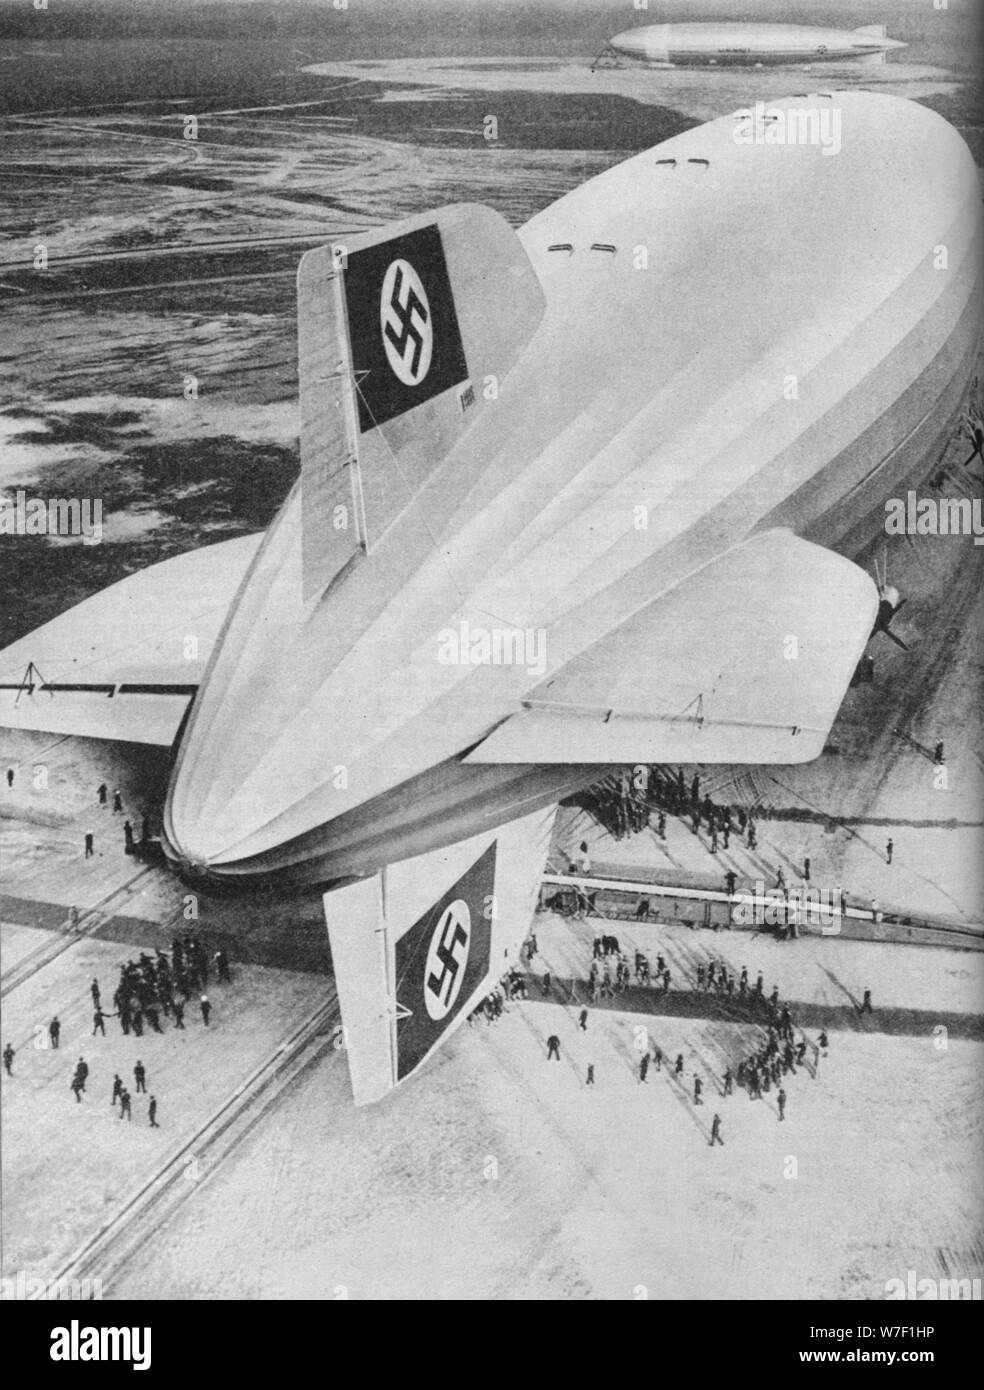 Deutschen Zeppelin Luftschiff "Hindenburg" in Lakehurst, New Jersey, c1936 festgemacht (c1937). Künstler: unbekannt. Stockfoto